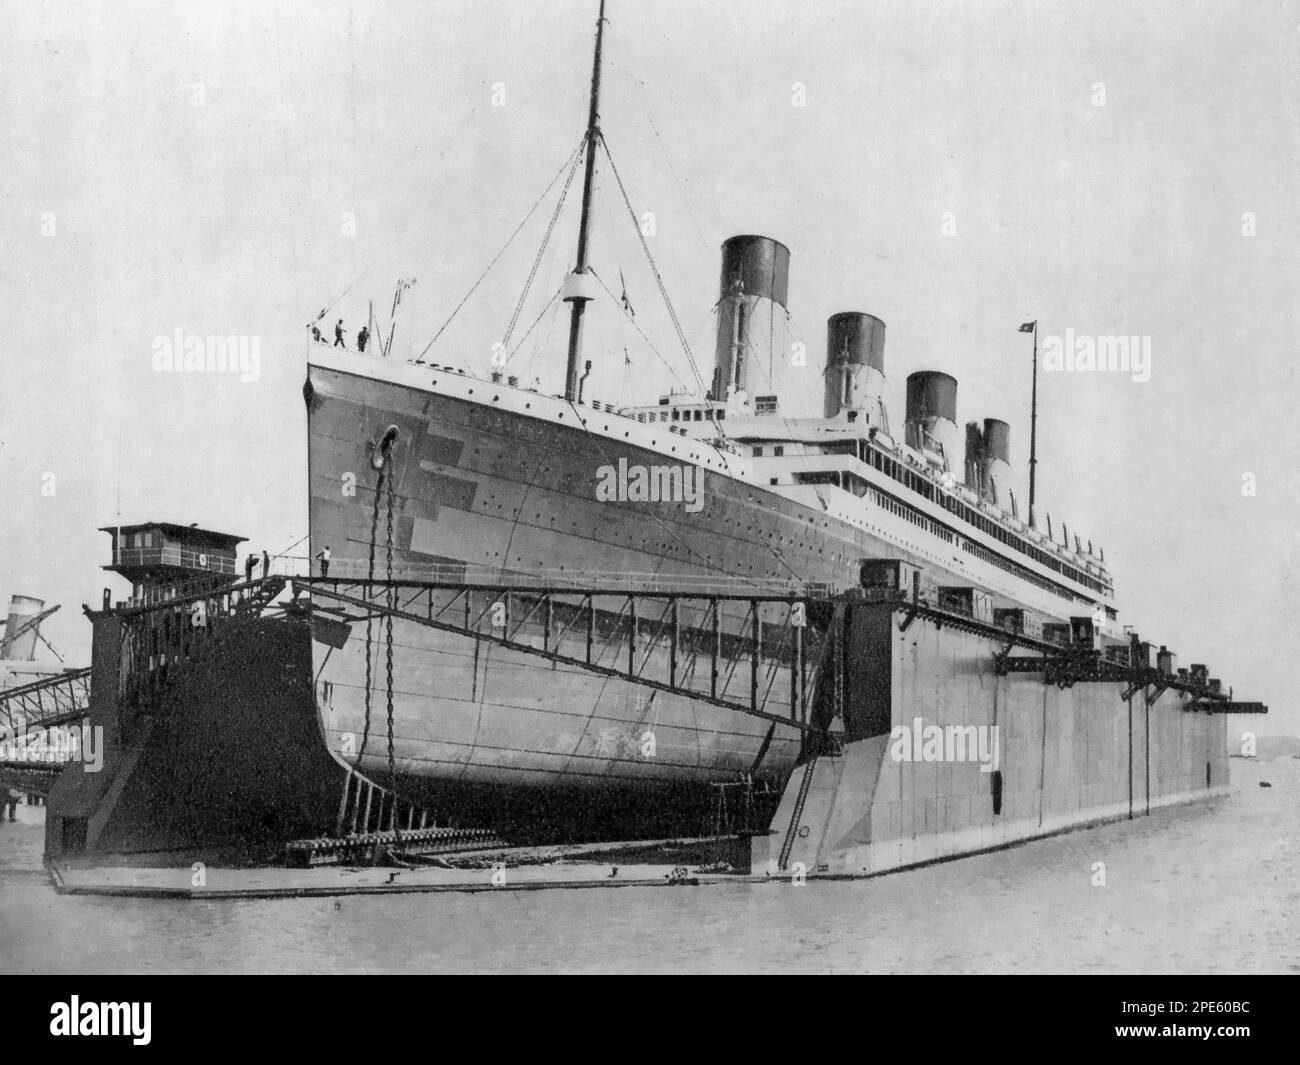 Il White Star Liner RMS Olympic nel bacino galleggiante, Southampton, Inghilterra, c1924. RMS Olympic era un transatlantico britannico e la nave principale del trio di navi di classe olimpica della White Star Line. Olympic ha avuto una carriera di 24 anni dal 1911 al 1935, in contrasto con le sue navi gemelle di breve durata, Titanic e Britannic. Foto Stock